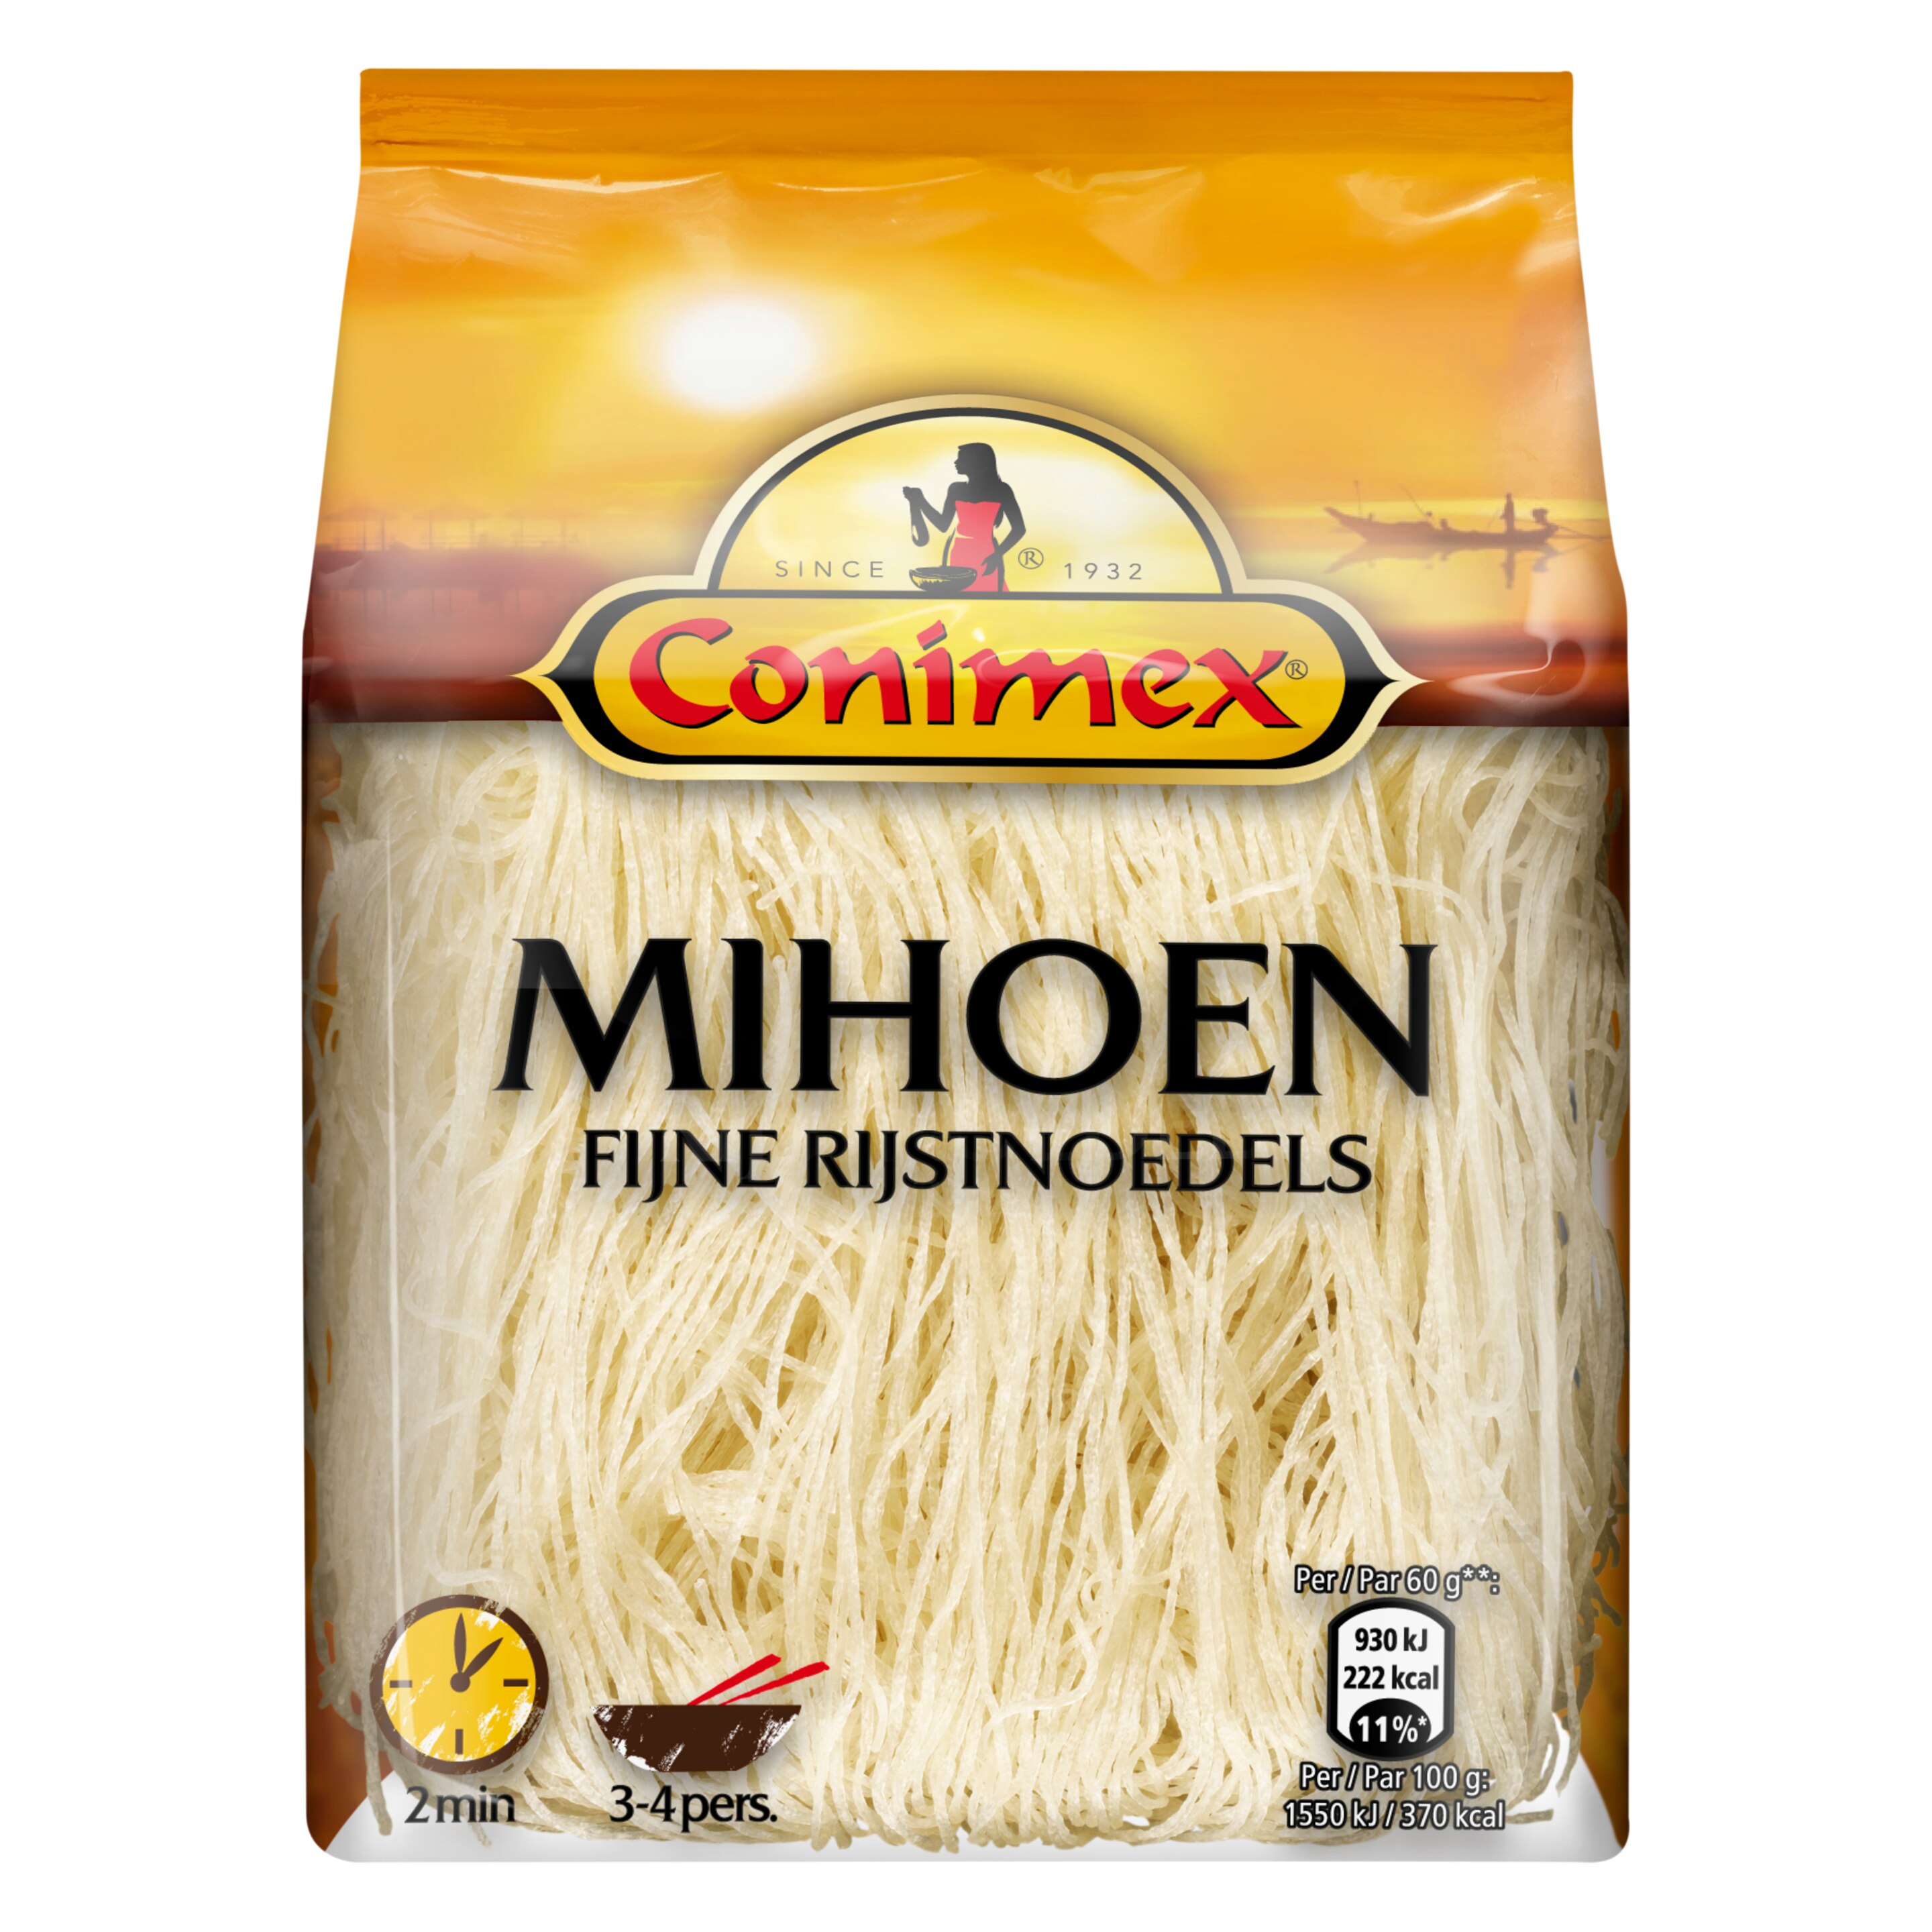 Conimex Mihoen